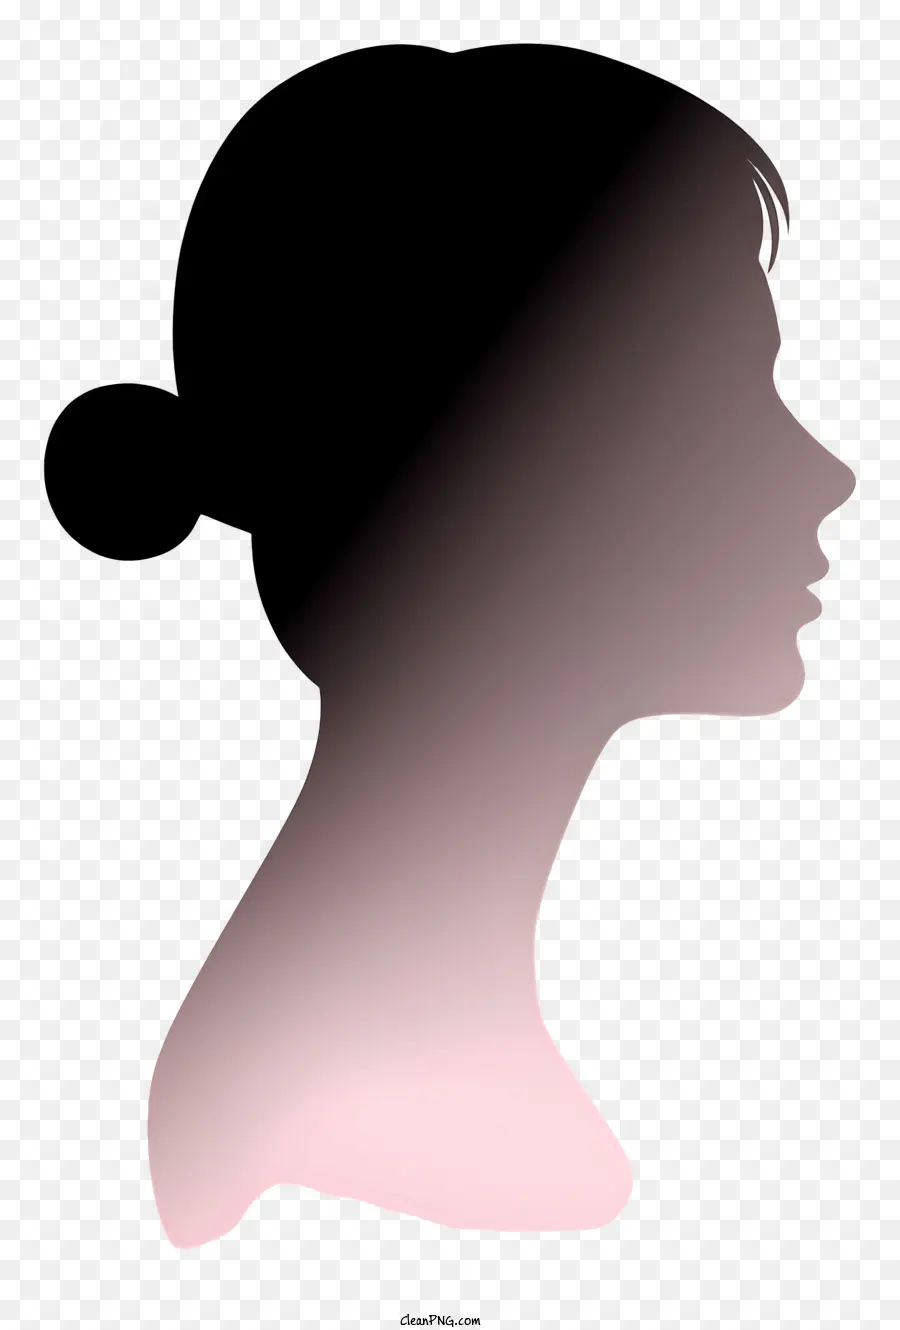 Realistische Frauen Seitengesicht Silhouette Frau Profil Silhouette Pink geschlossene Augen - Silhouette -Profil einer Frau mit geschlossenen Augen